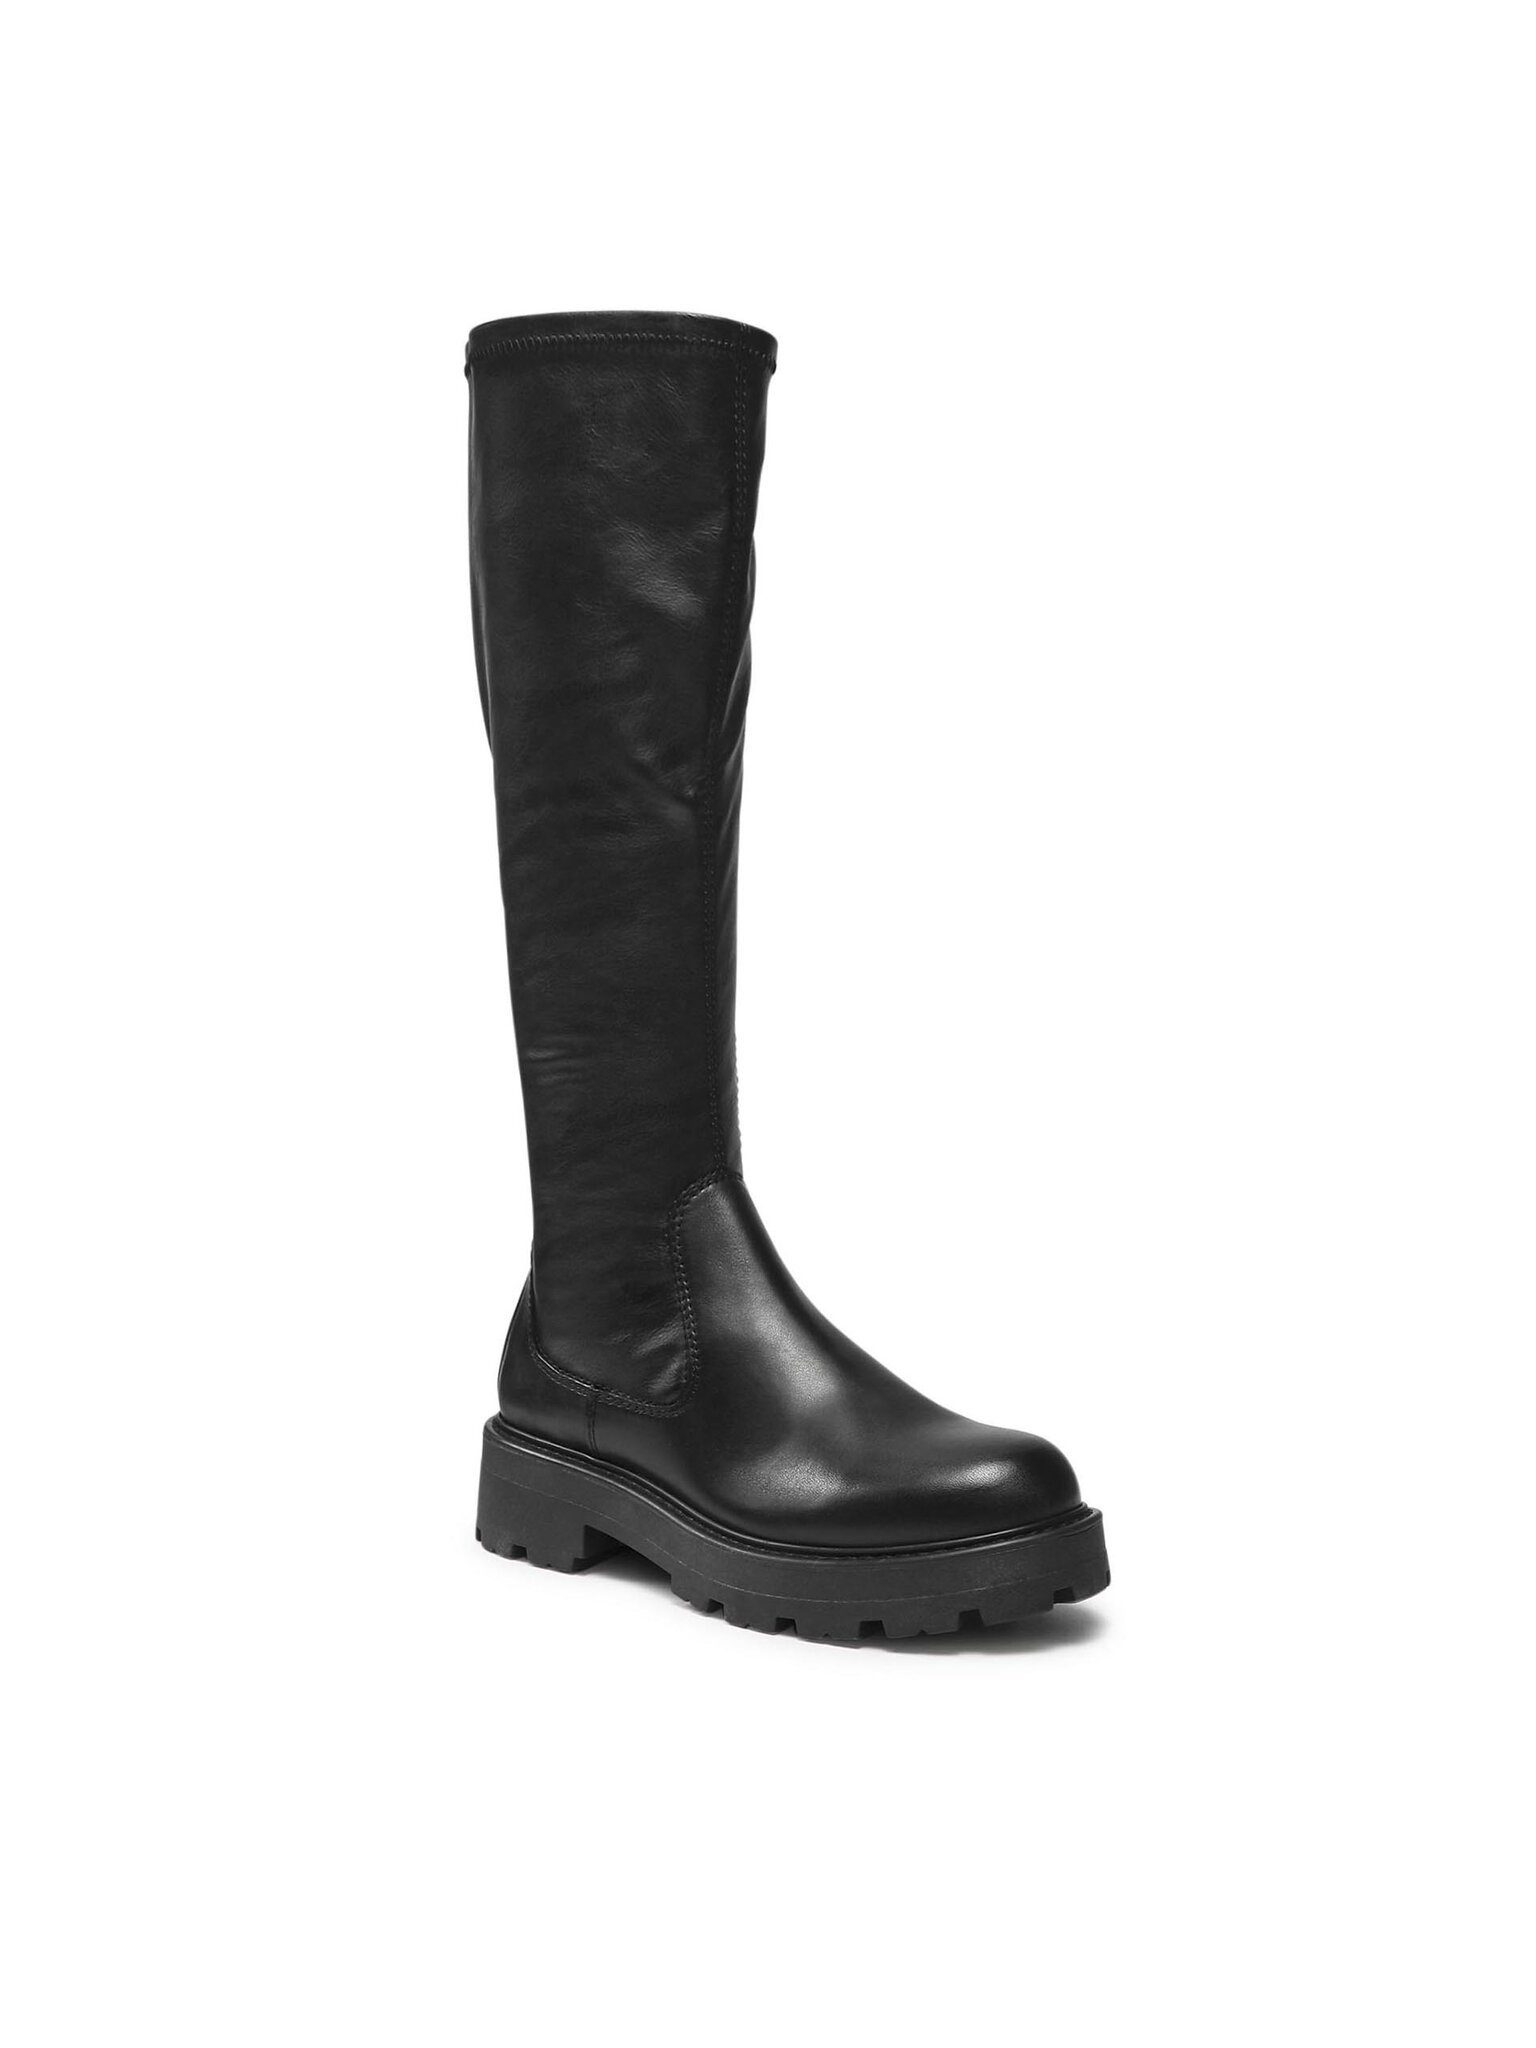 Vagabond Stiefel Cosmo 2.0 5249-002-20 Black Stiefel